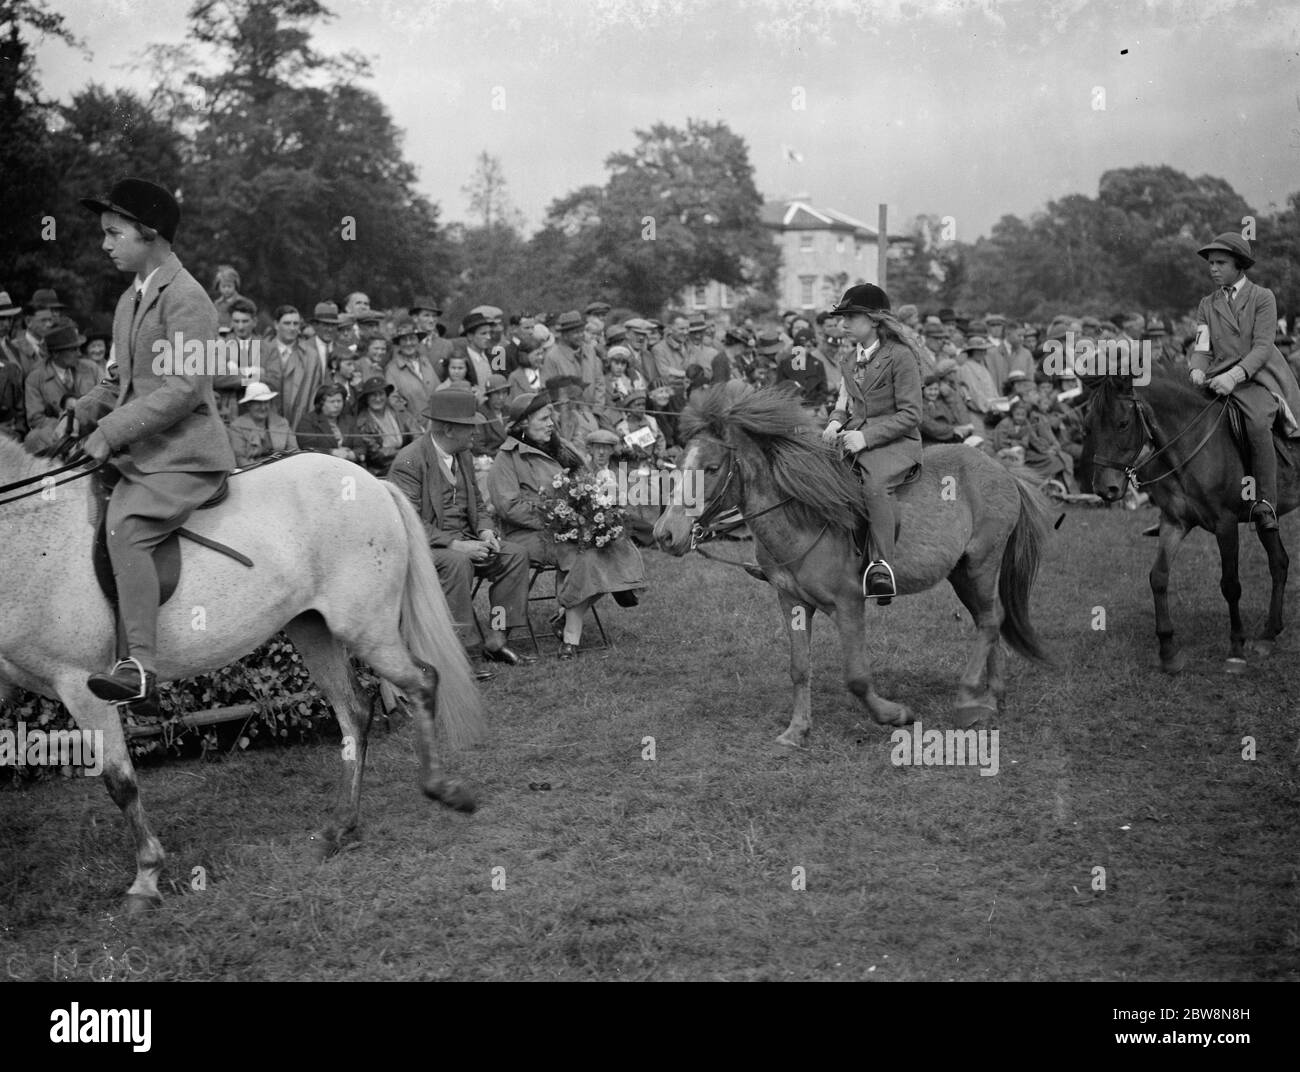 Die Eltham und Bromley gymkhama . Junge Reiter Wettbewerb, Reiten rund um den Ring. 1938 Stockfoto